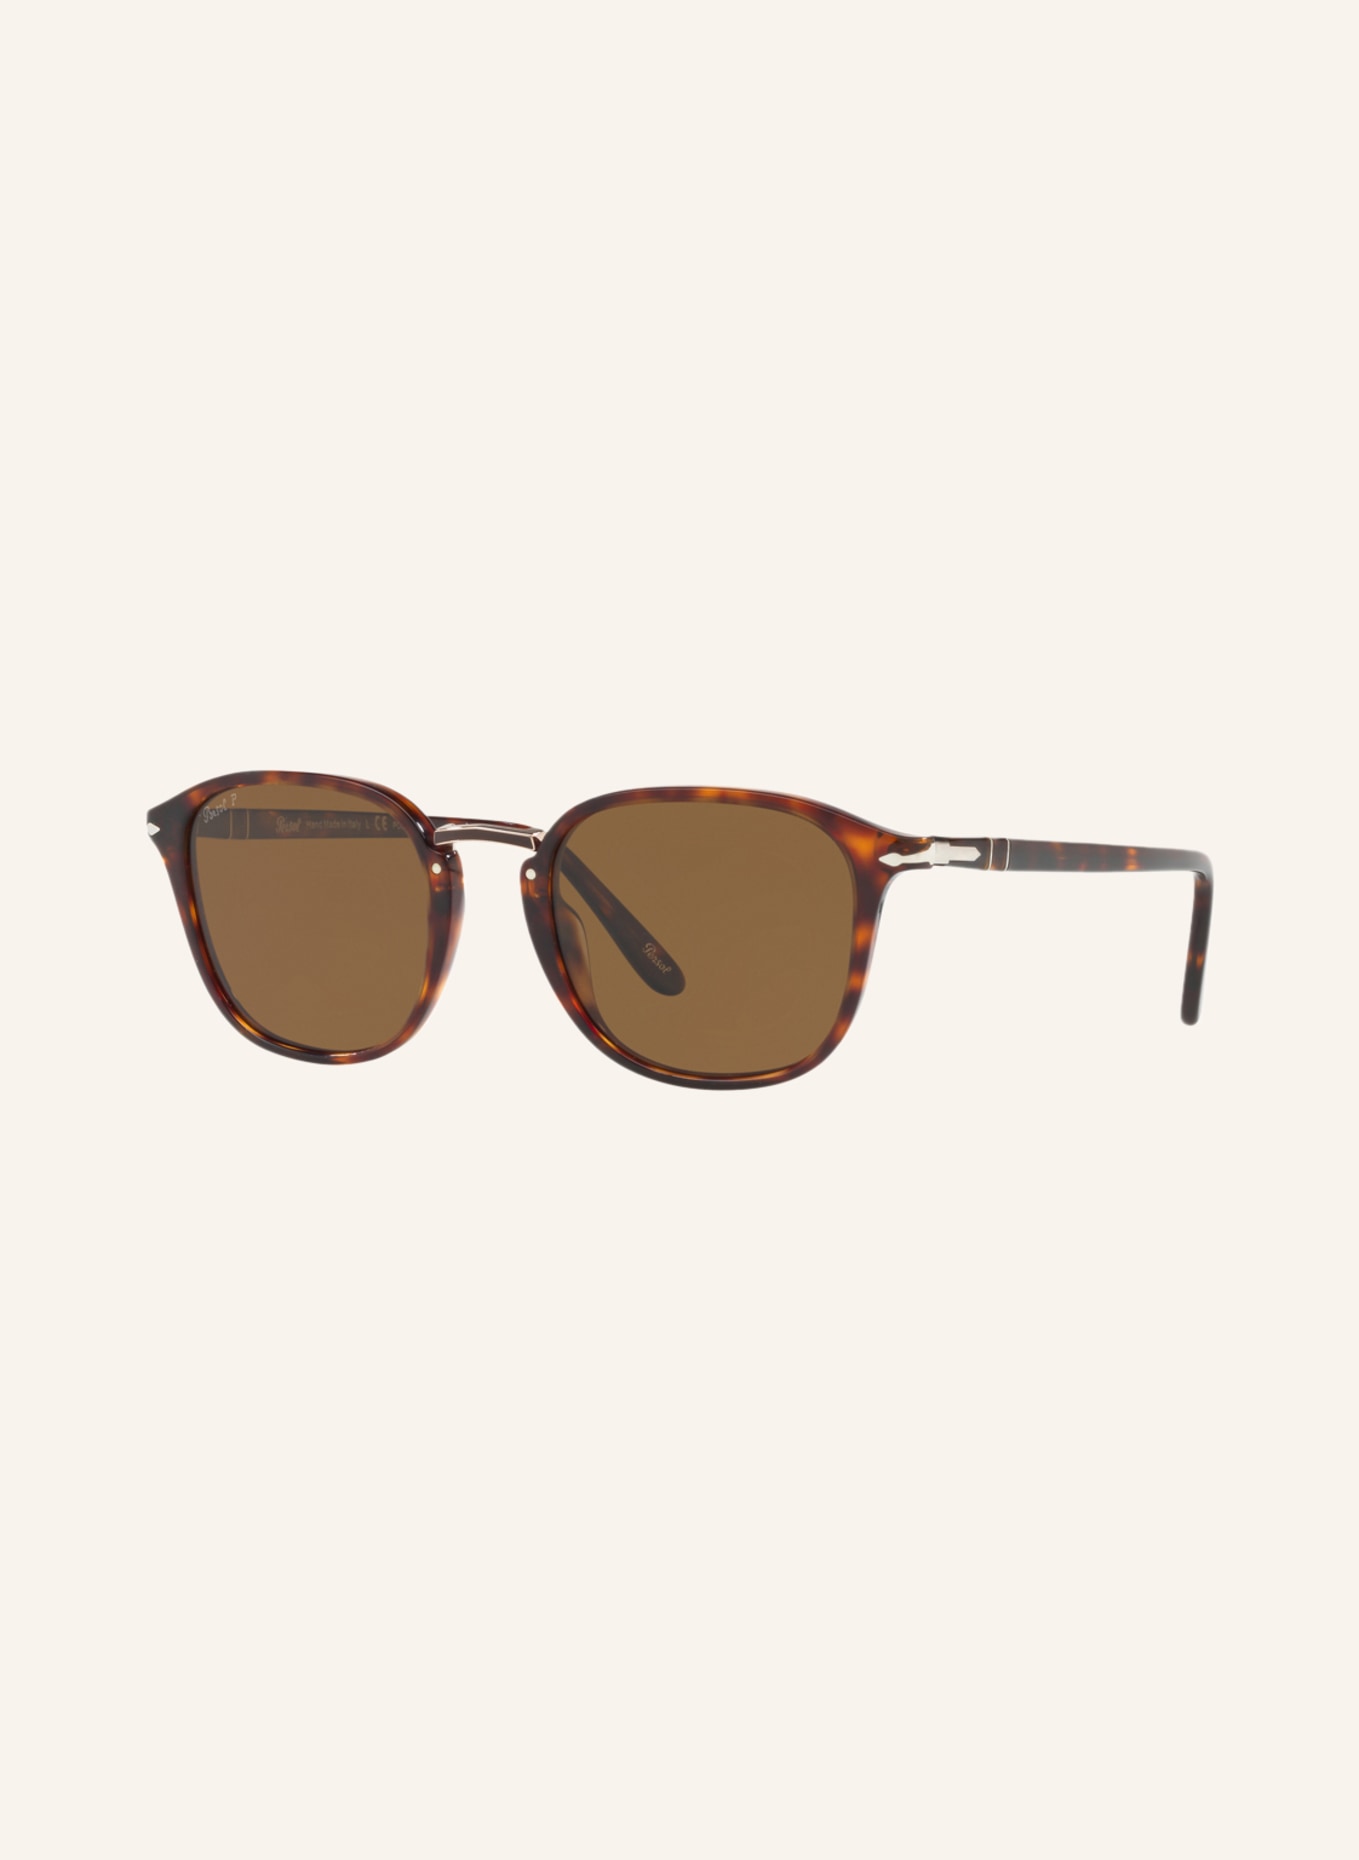 Persol Sunglasses PO3186S, Color: 24/ 57 - HAVANA - BROWN POLARIZED (Image 1)